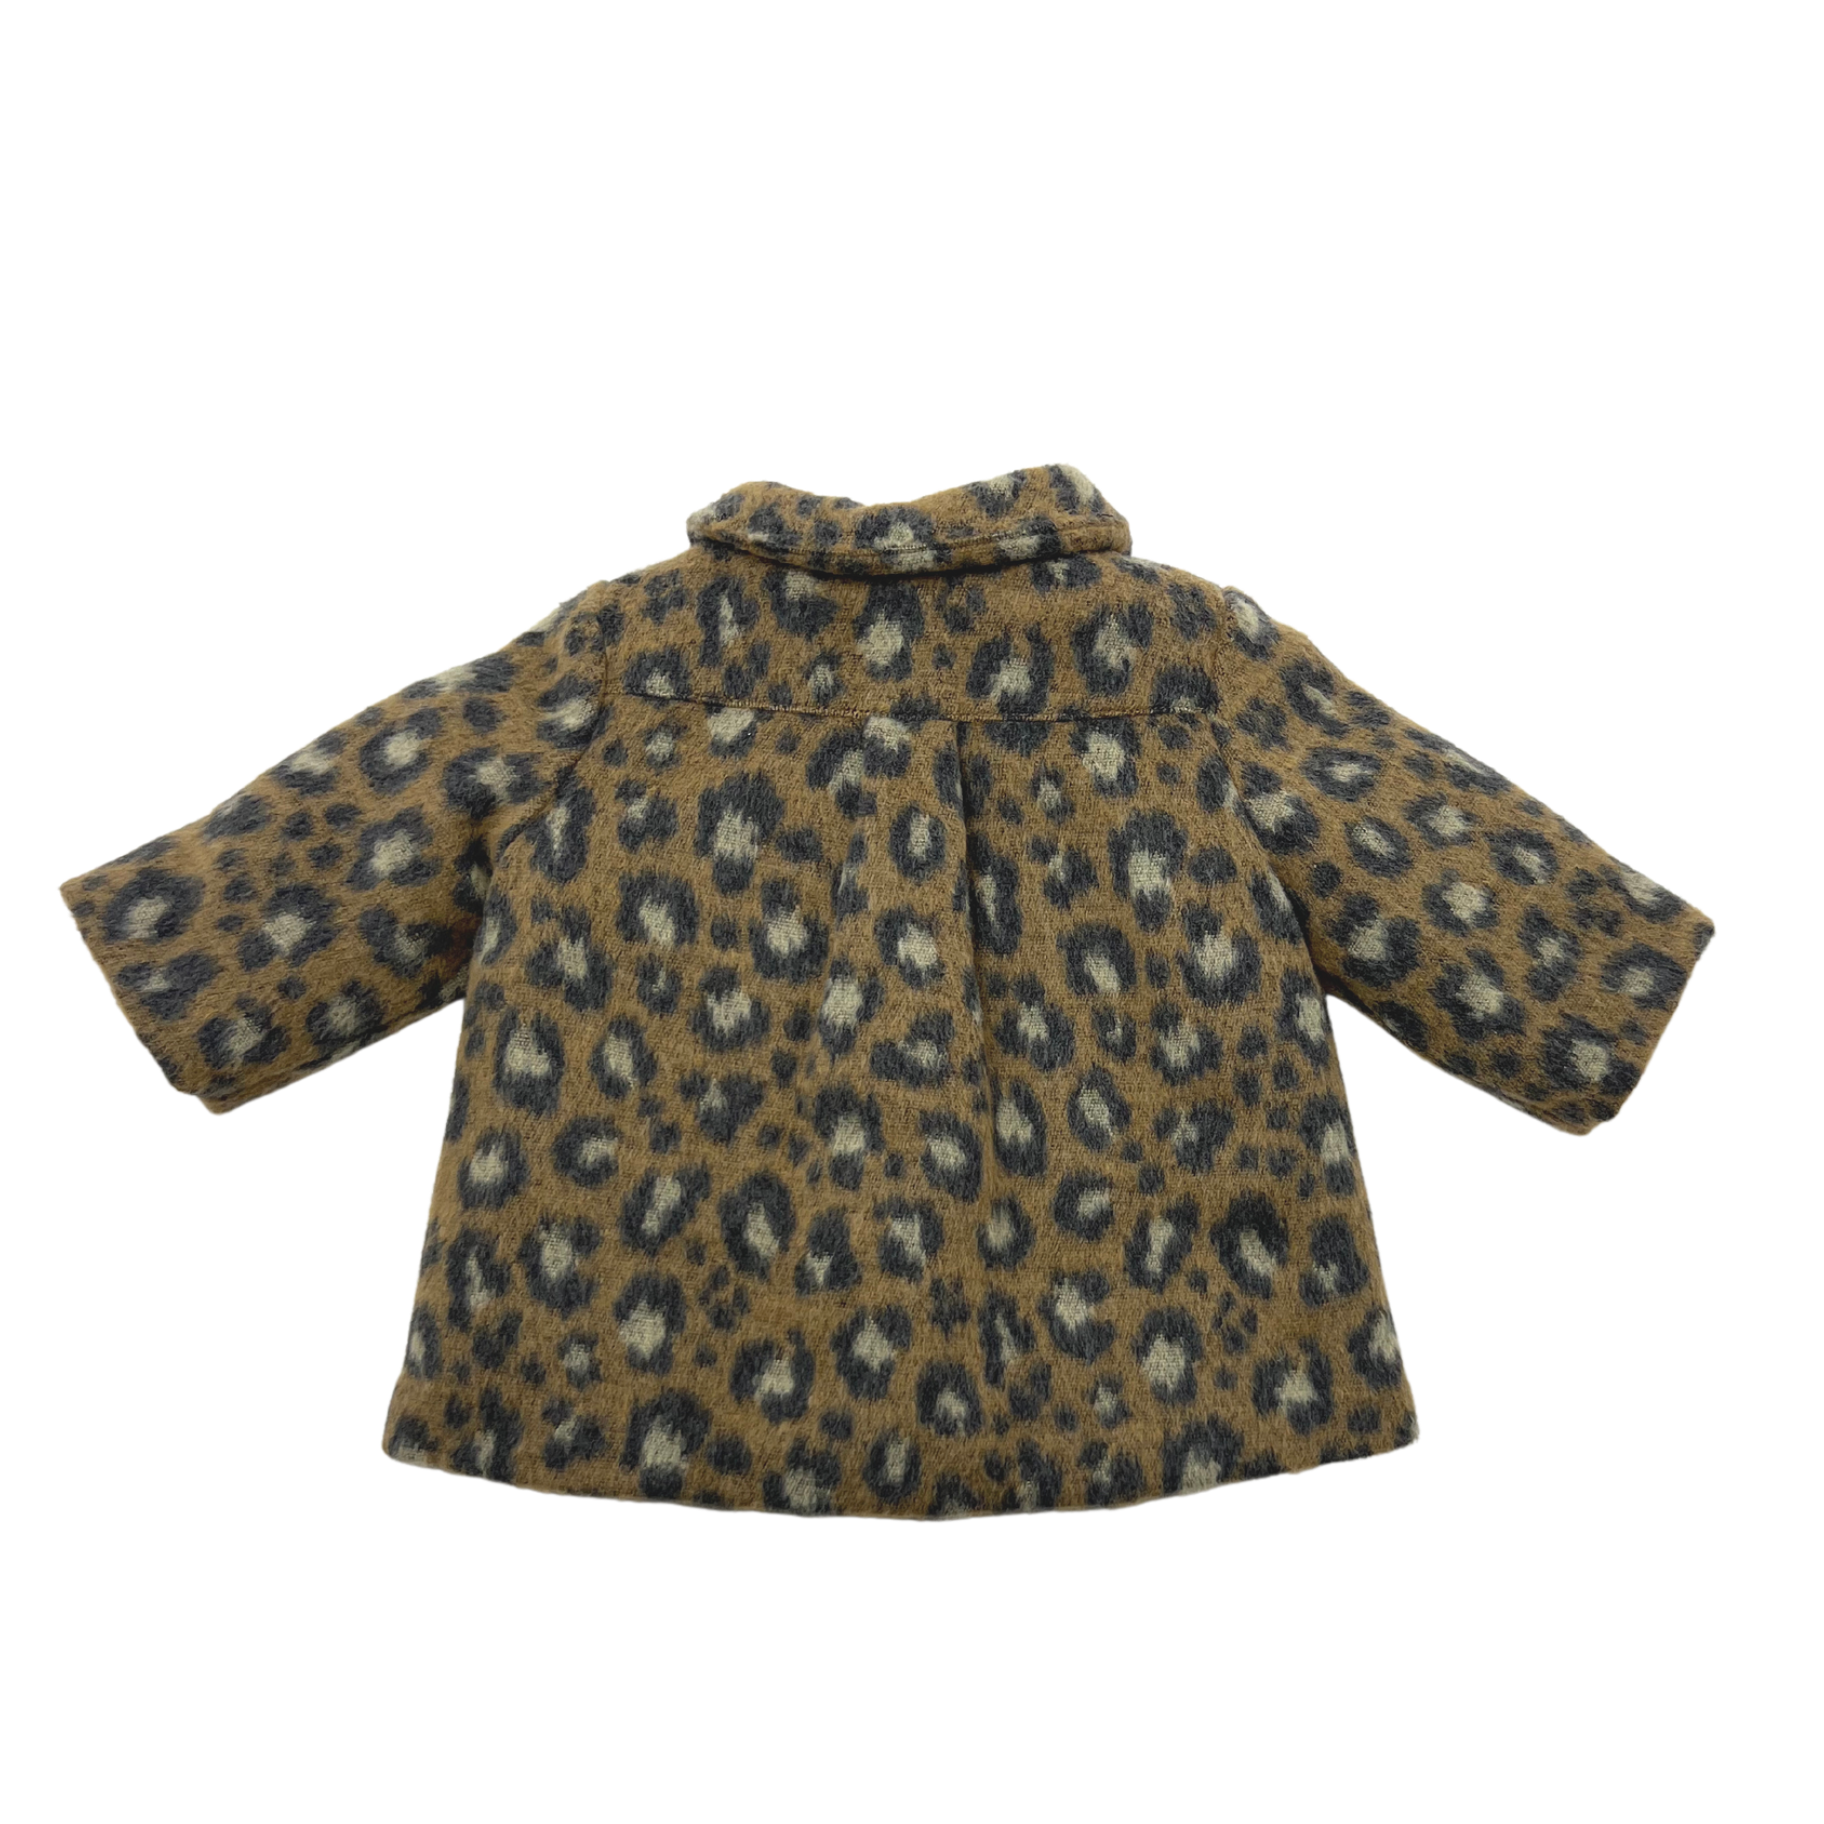 BONTON - Leopard coat - 6 months